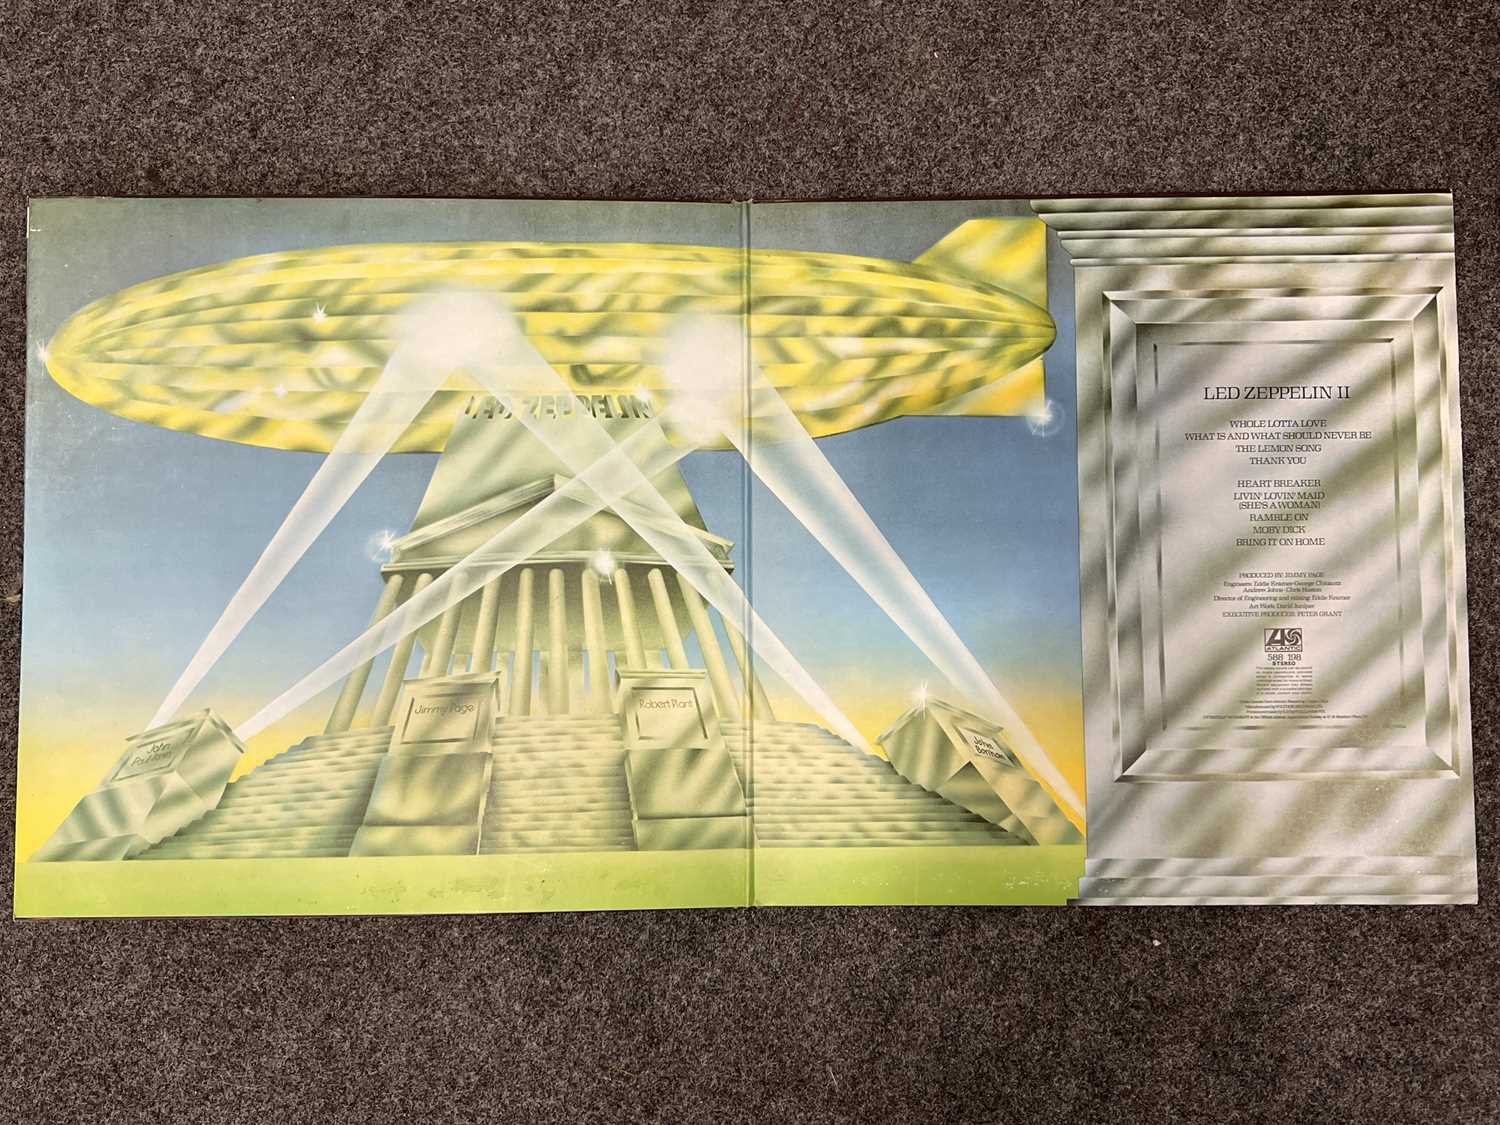 Led Zeppelin, I/ II/ and III LPs, Plum Atlantic labels - Image 5 of 12